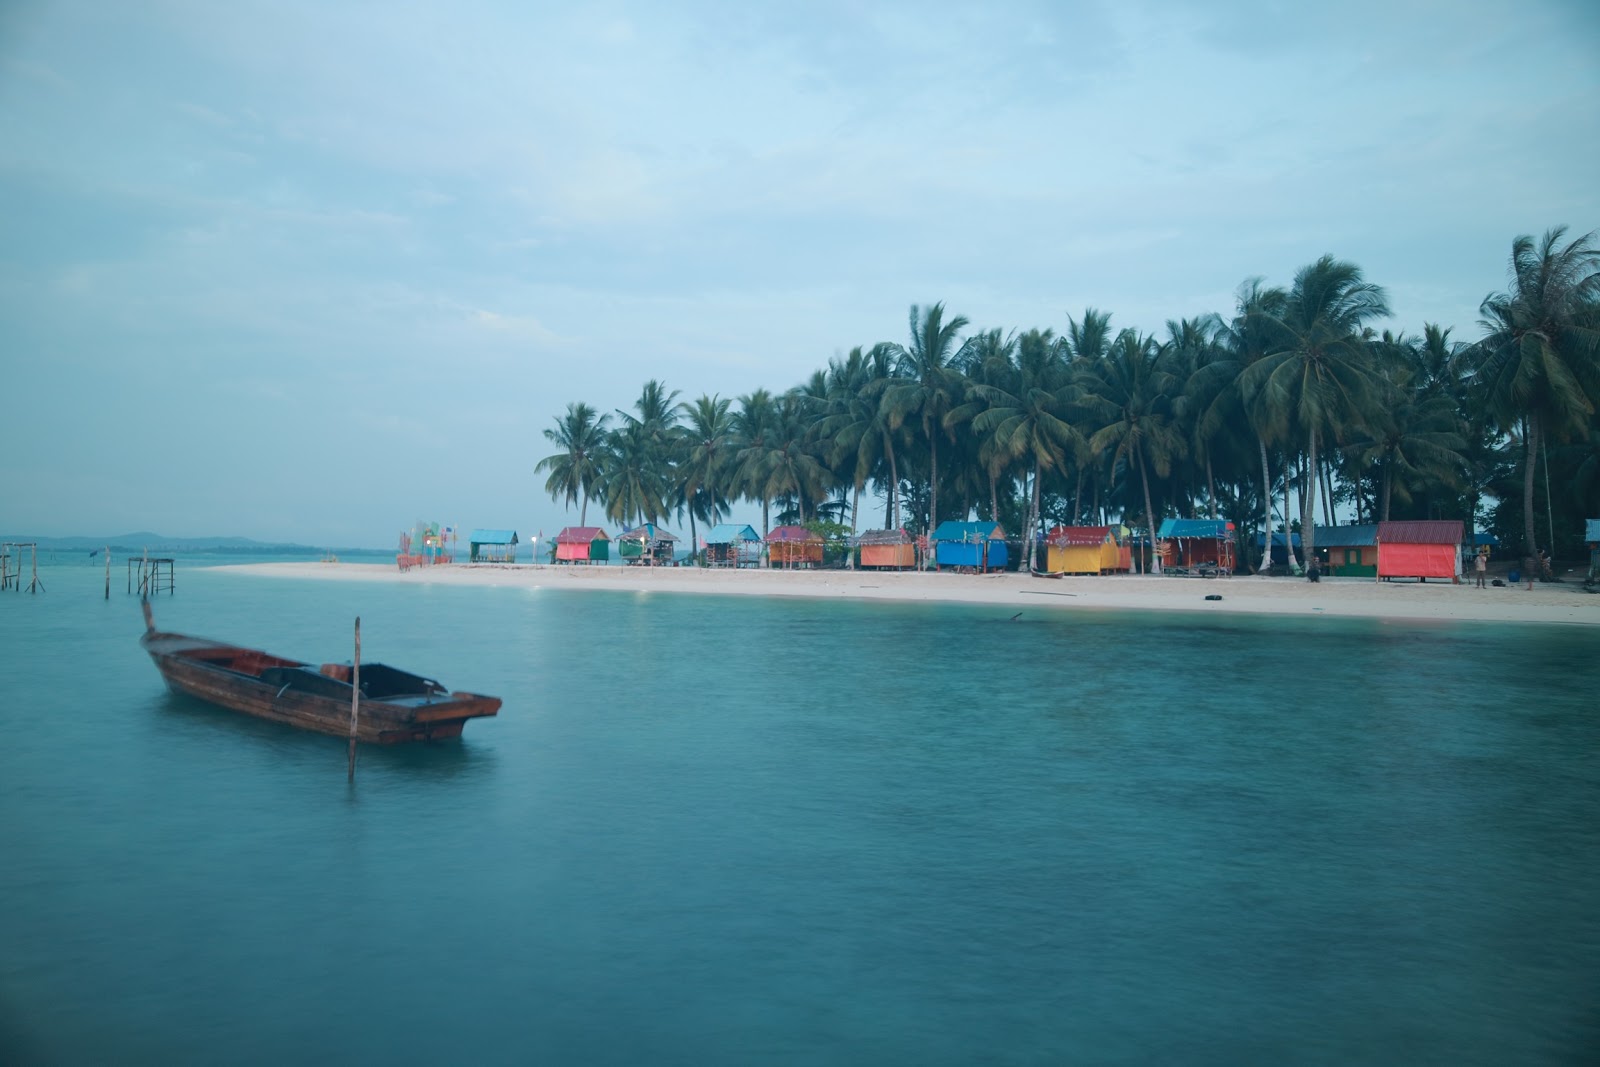 Foto de Wisata Pulau Mubut Darat - lugar popular entre los conocedores del relax